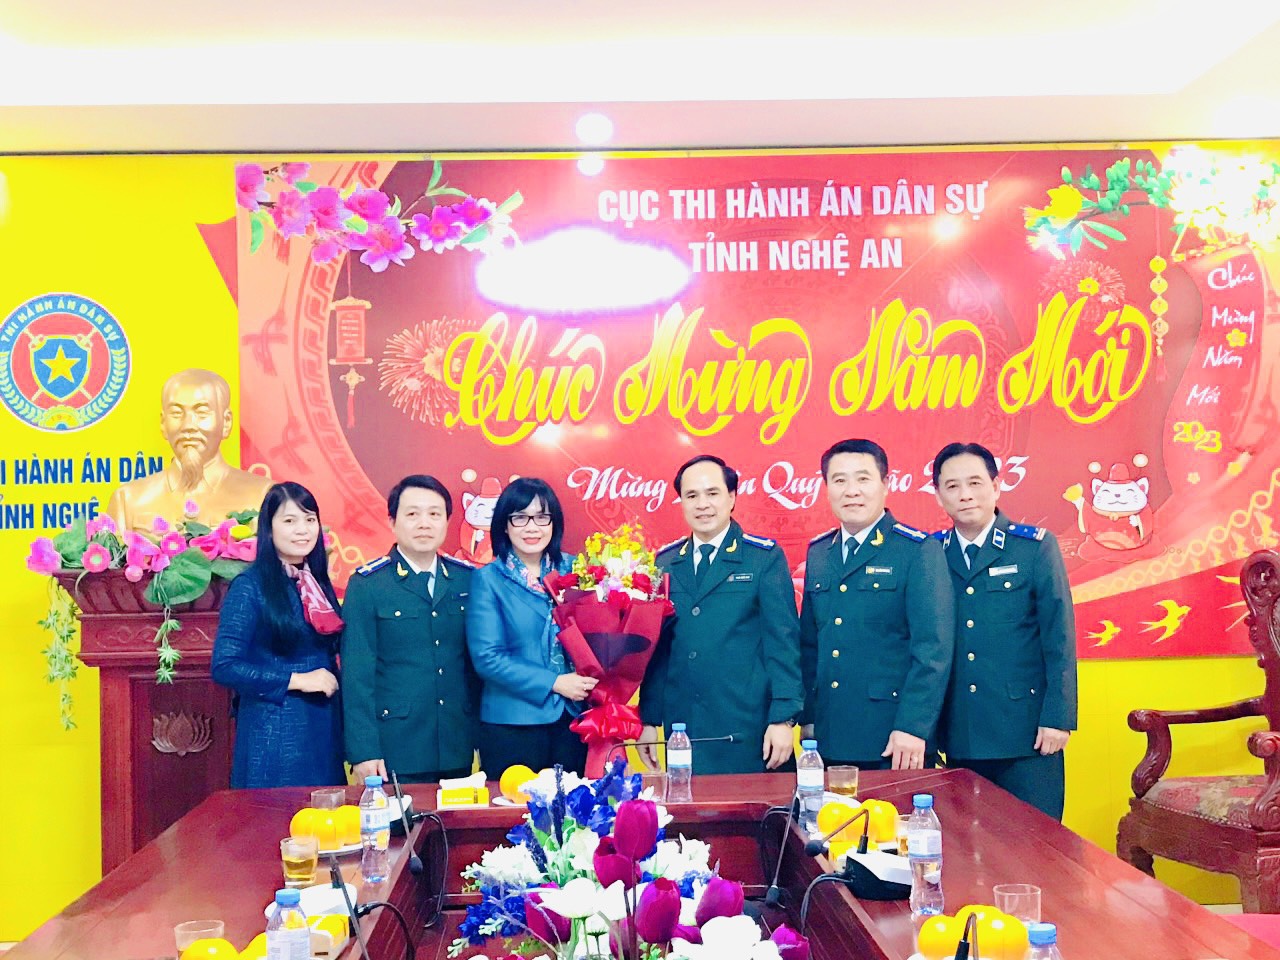 Thứ trưởng Bộ Tư pháp, Đặng Hoàng Oanh thăm tặng quà và chúc Tết Cục Thi hành án dân sự tỉnh Nghệ An